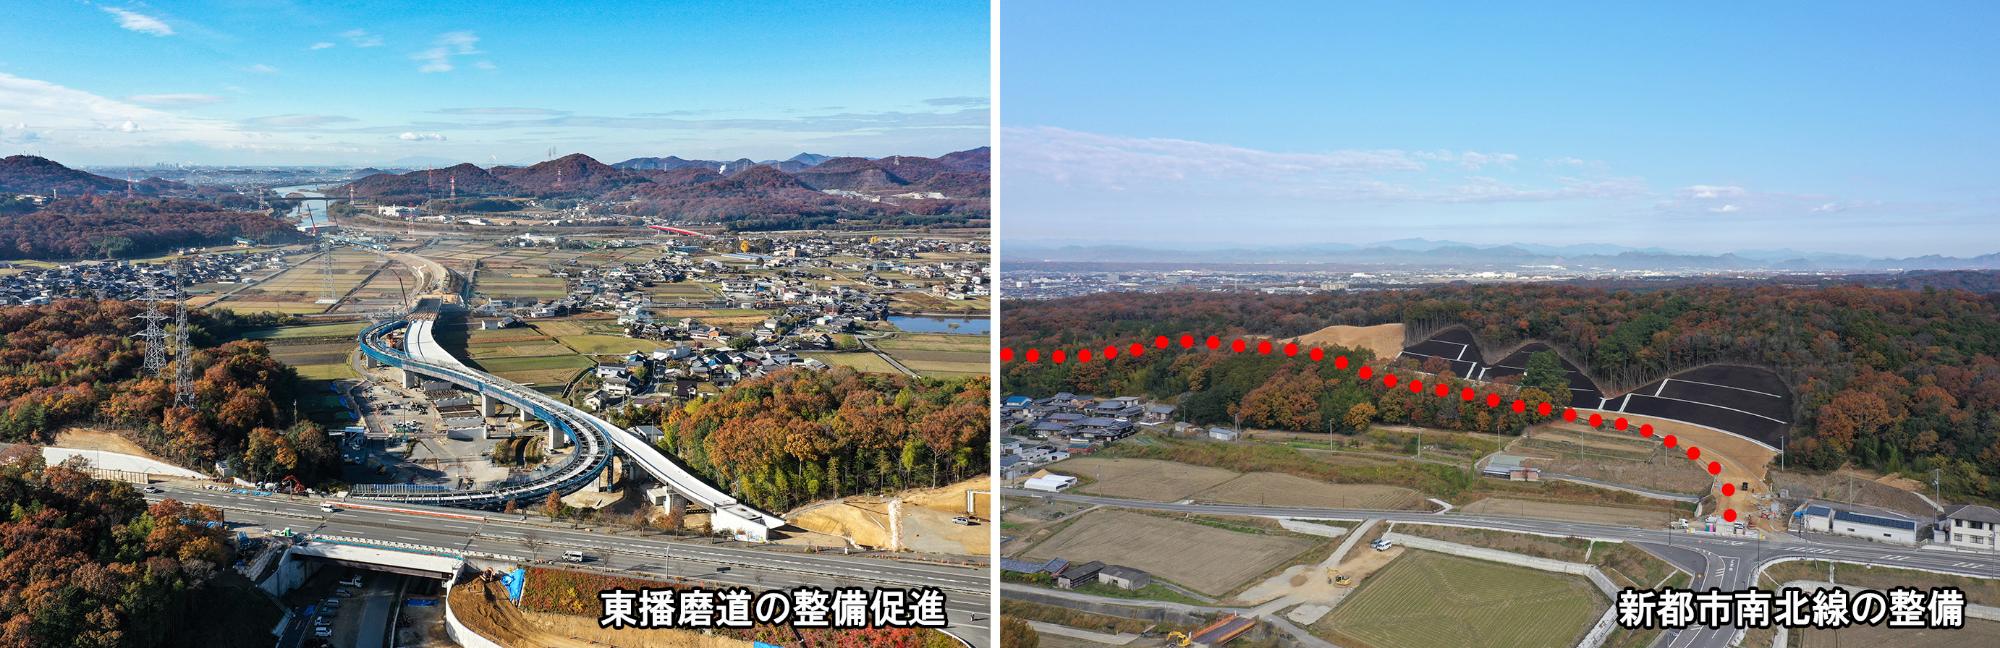 東播磨南北道路と新都市南北線の整備状況の写真